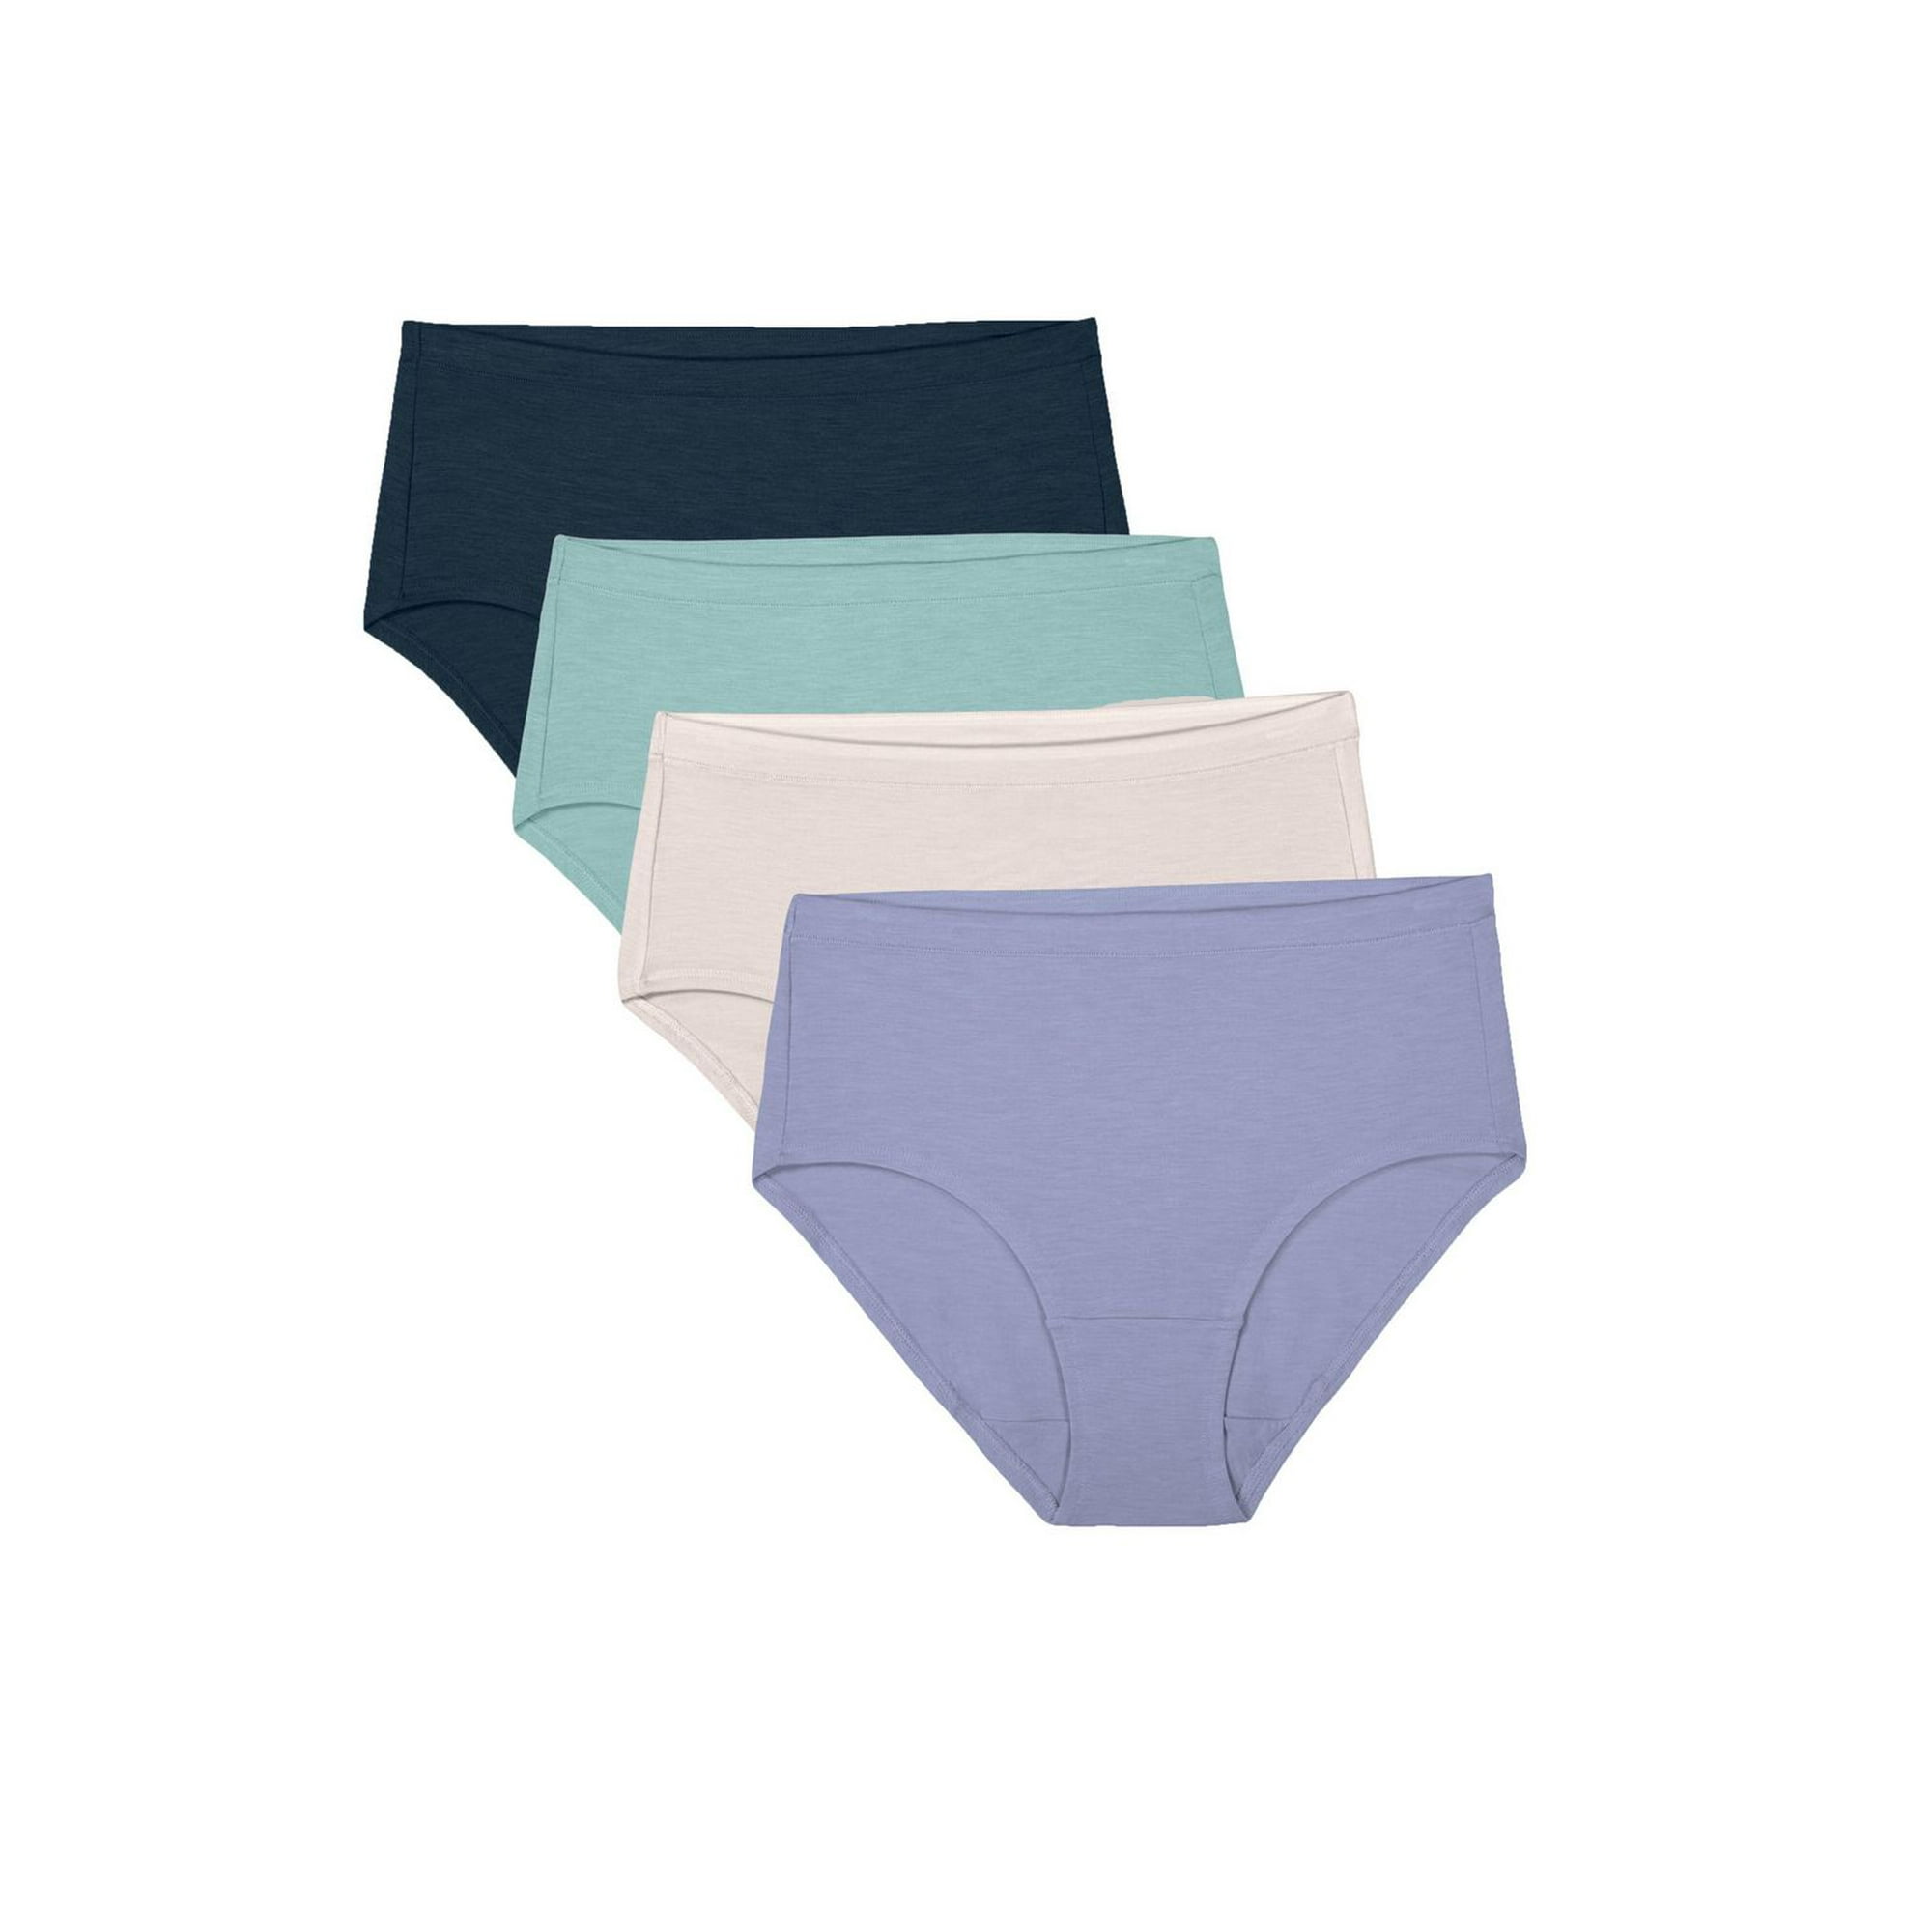 Fashion Seamless Women's Panties Cotton Underwear Soft @ Best Price Online